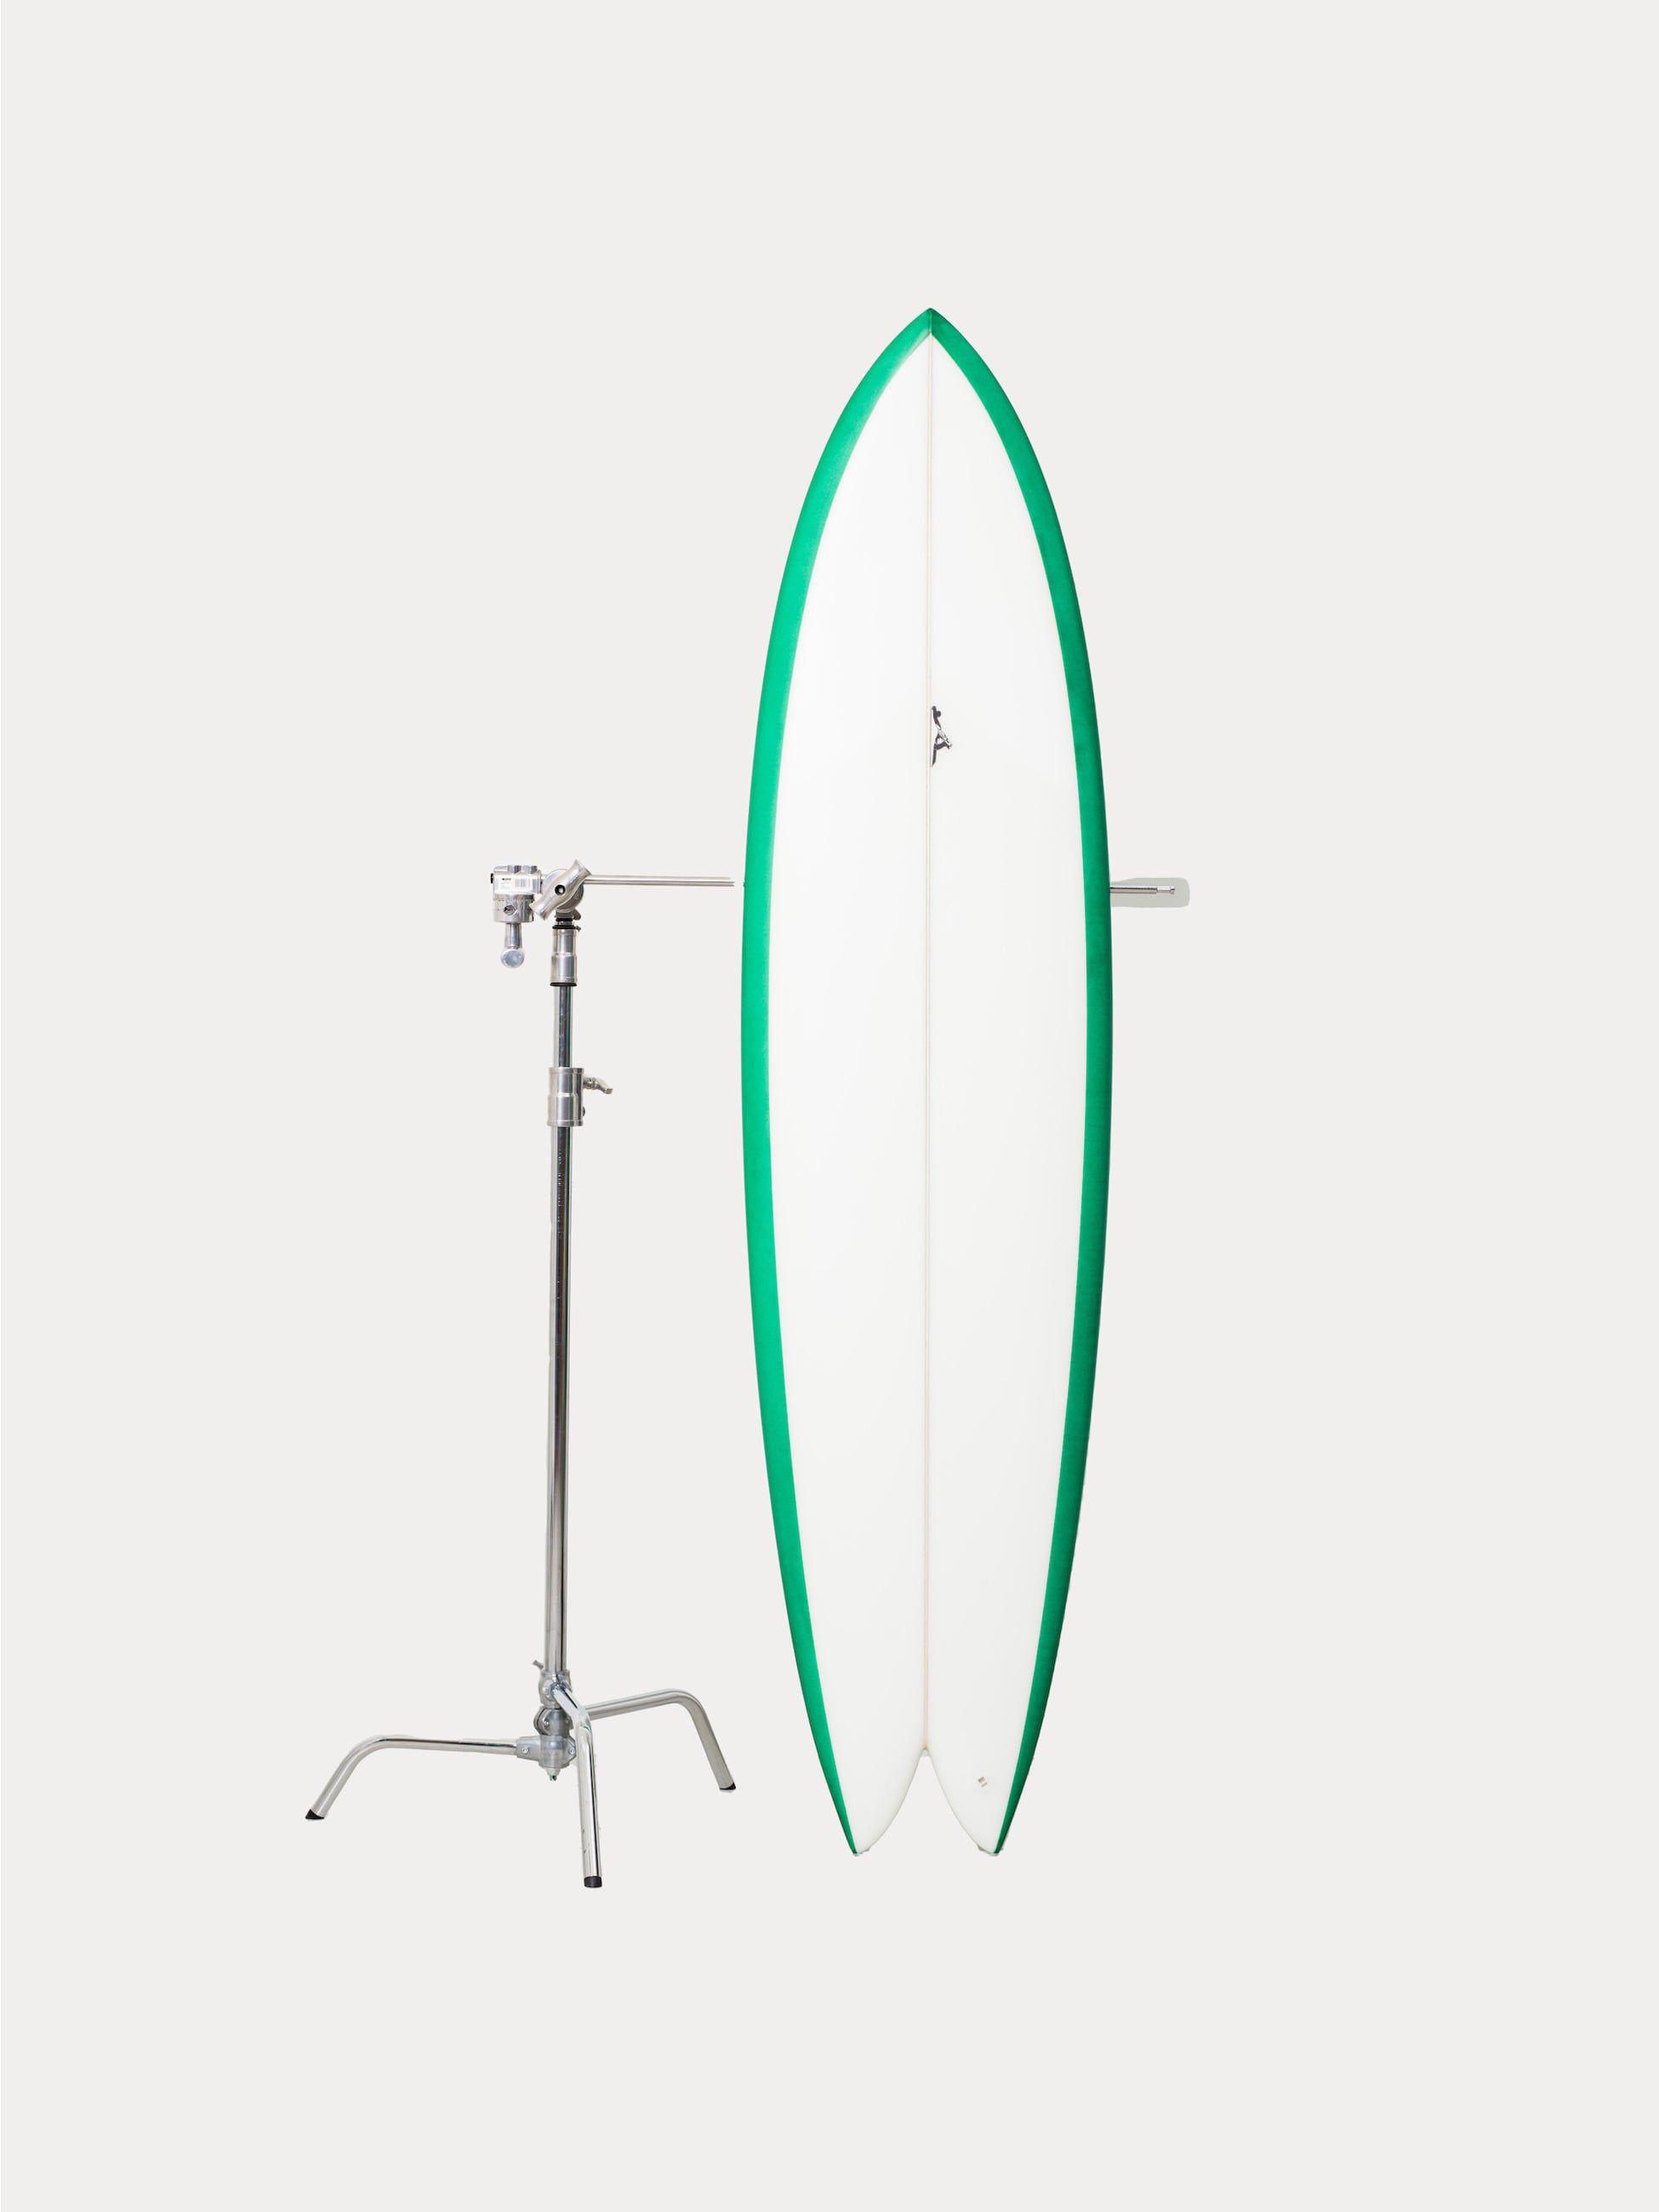 Surfboard Long Fish 7’6 詳細画像 green 1